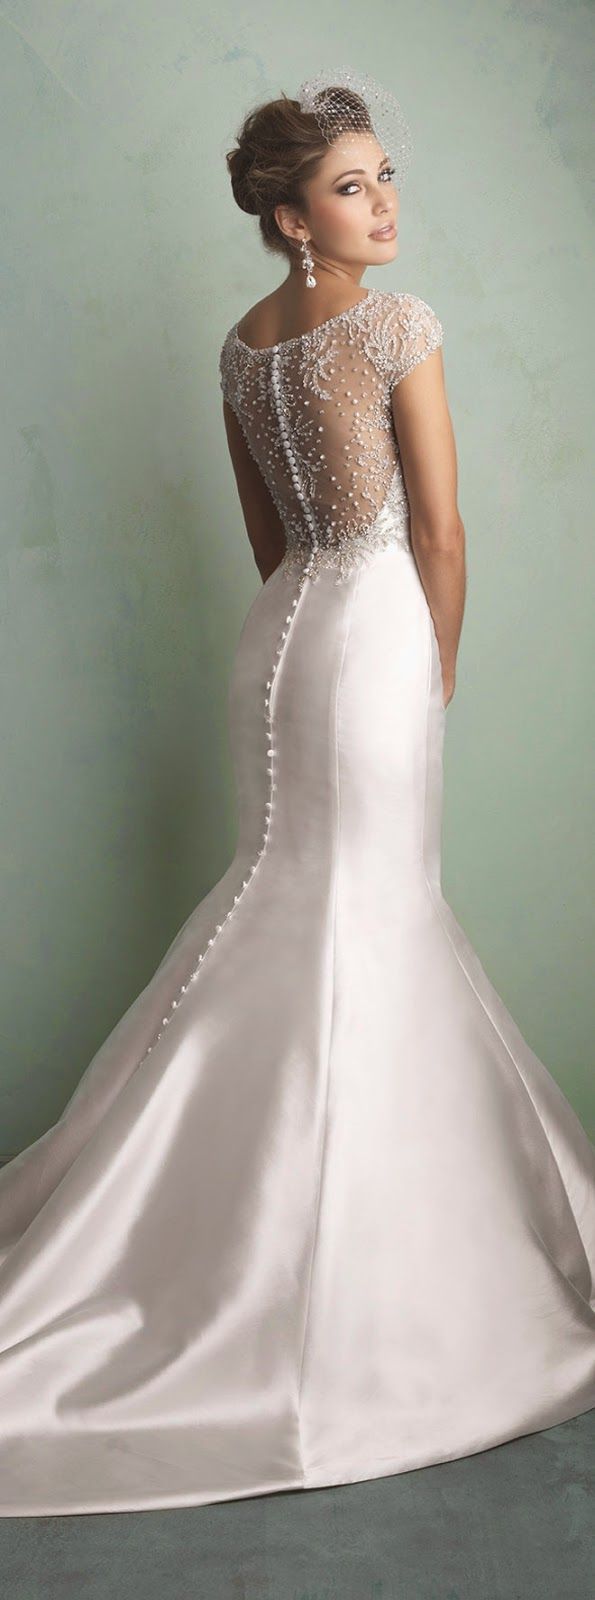 زفاف - Buttons Down The Back: Sophisticated Wedding Gowns